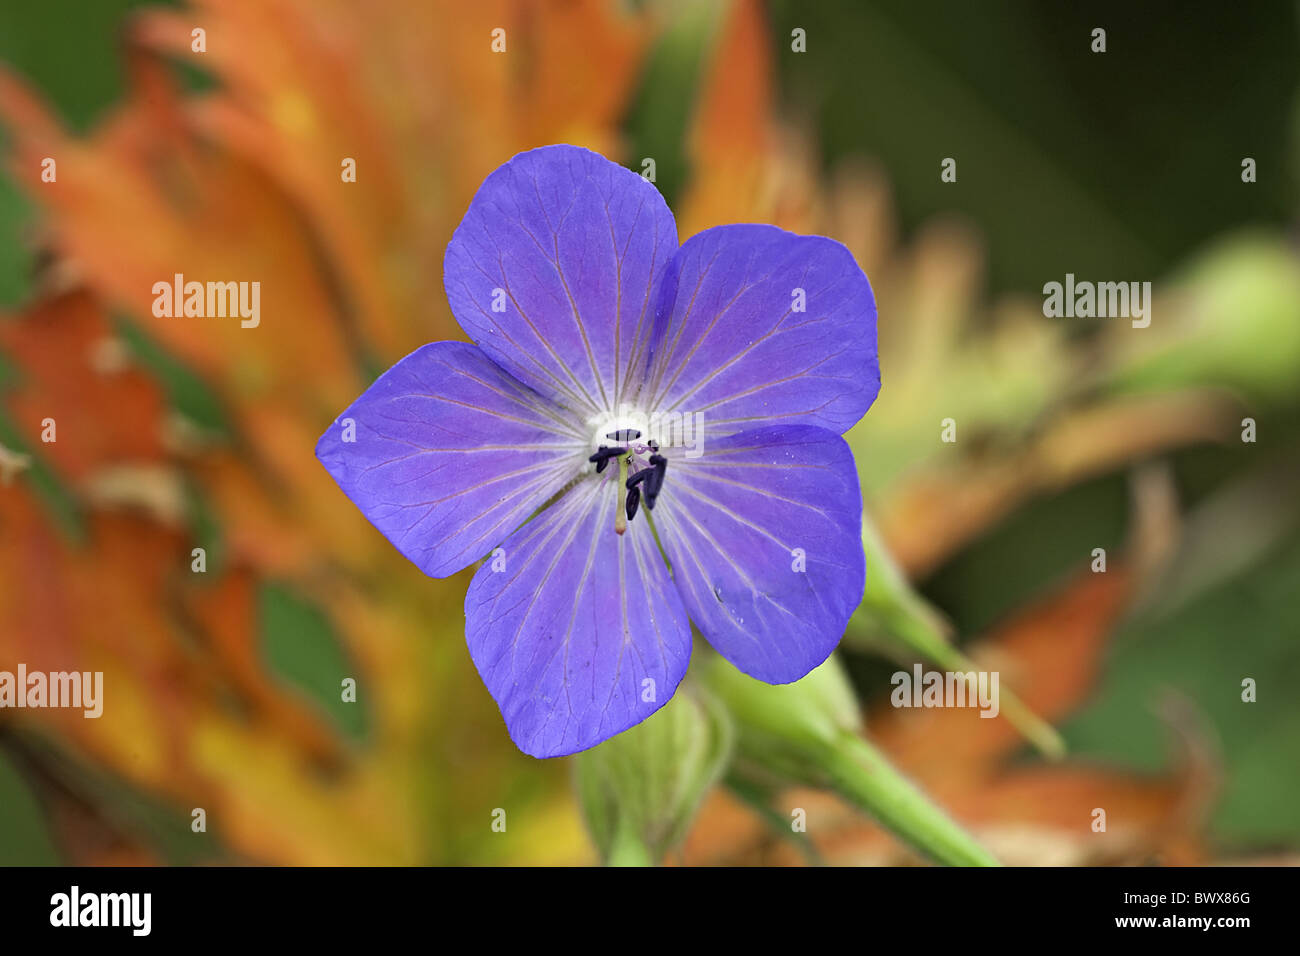 Geranium Pratense Wiesen Pflanze Stockfotografie Farbe Storchschnabel blaue Blume Stigma Alamy Staubblätter Wiese Blüten Storchschnabel - Blumen Blüte Blume